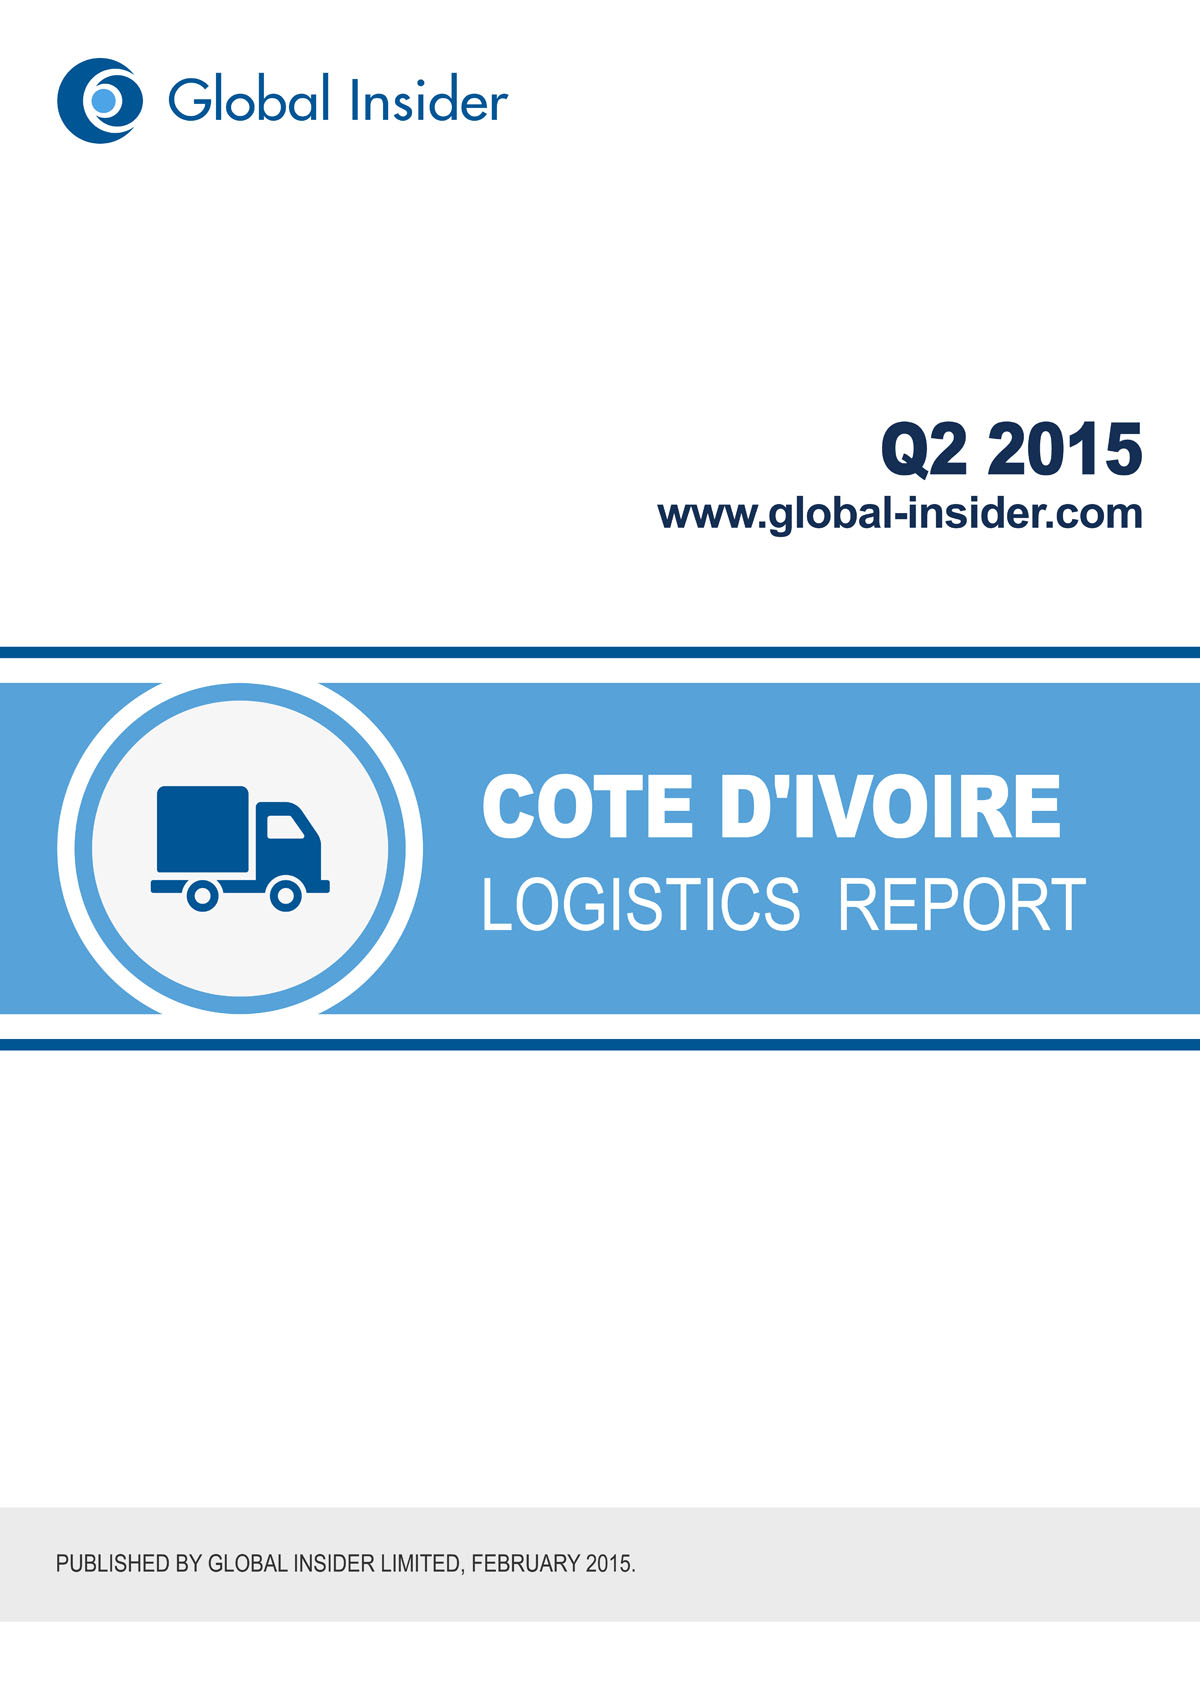 Cote d'Ivoire Logistics Report